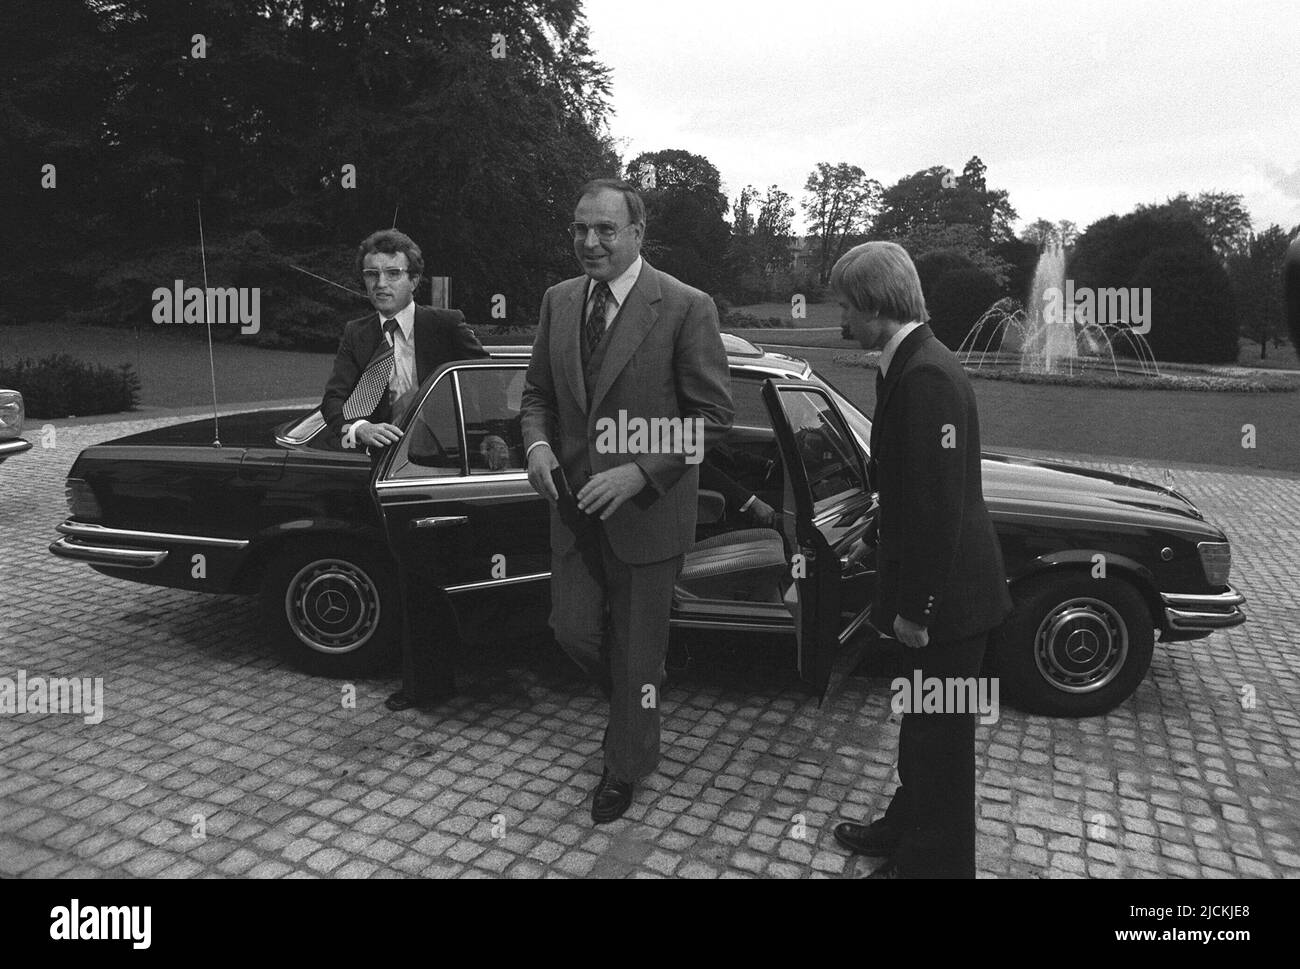 ARCHIVIO FOTOGRAFICO: 5 anni fa, il 16 giugno 2017, Helmut KOHL, Helmut KOHL, La Germania, politico, presidente della CDU, è morta, esce dall'auto, di fronte al giardino del Palais Schaumburg, visita il presidente federale Walter Scheel, QF Â Foto Stock